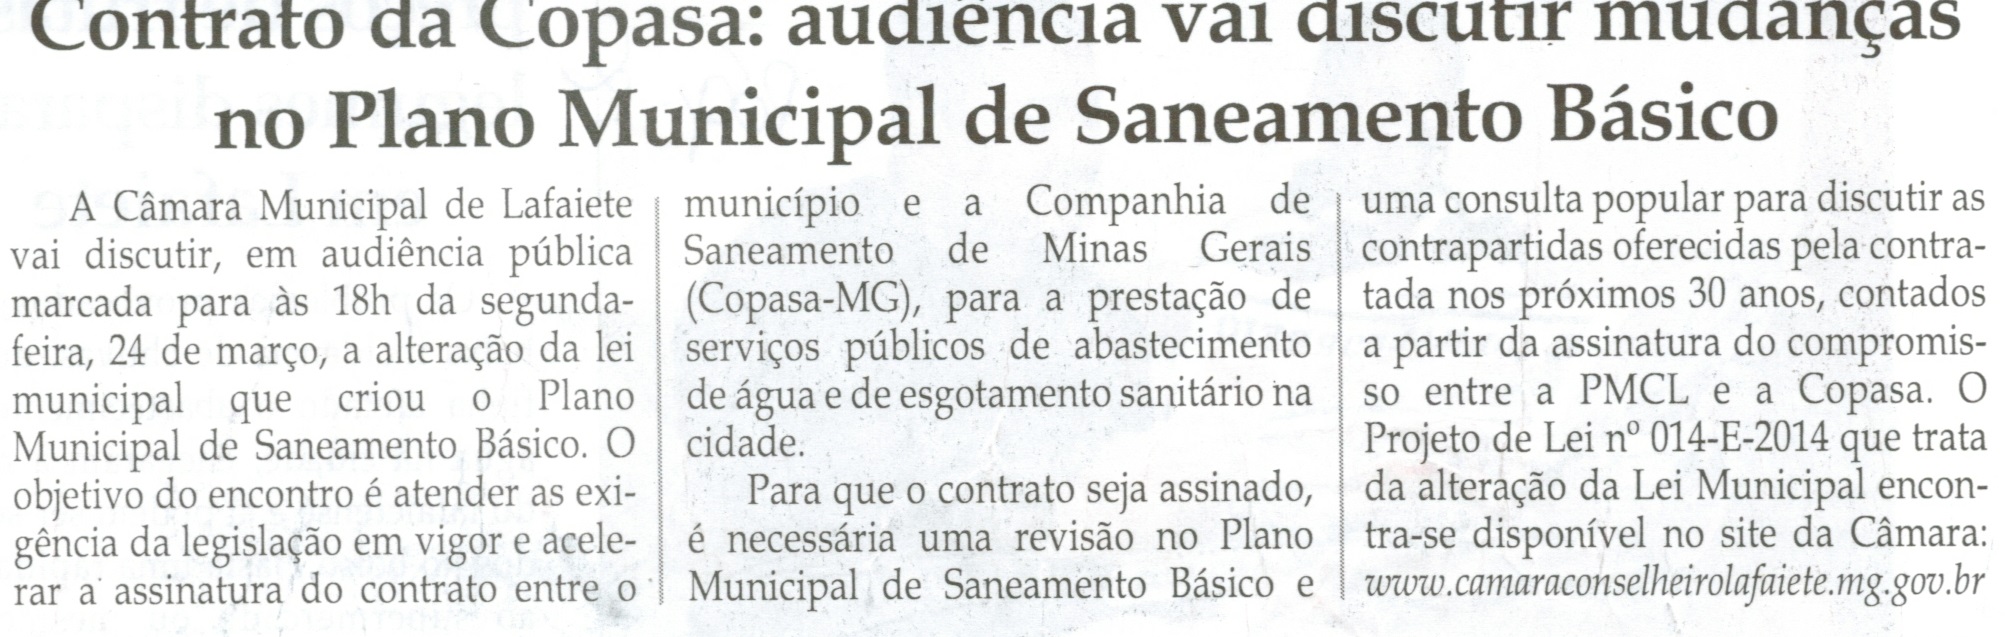 Contrato da Copasa: audiência vai discutir mudança no Plano Municipal de Saneamento Básico. Jornal Correio da Cidade, Conselheiro Lafaiete, 21 mar. 2014, p. 2.